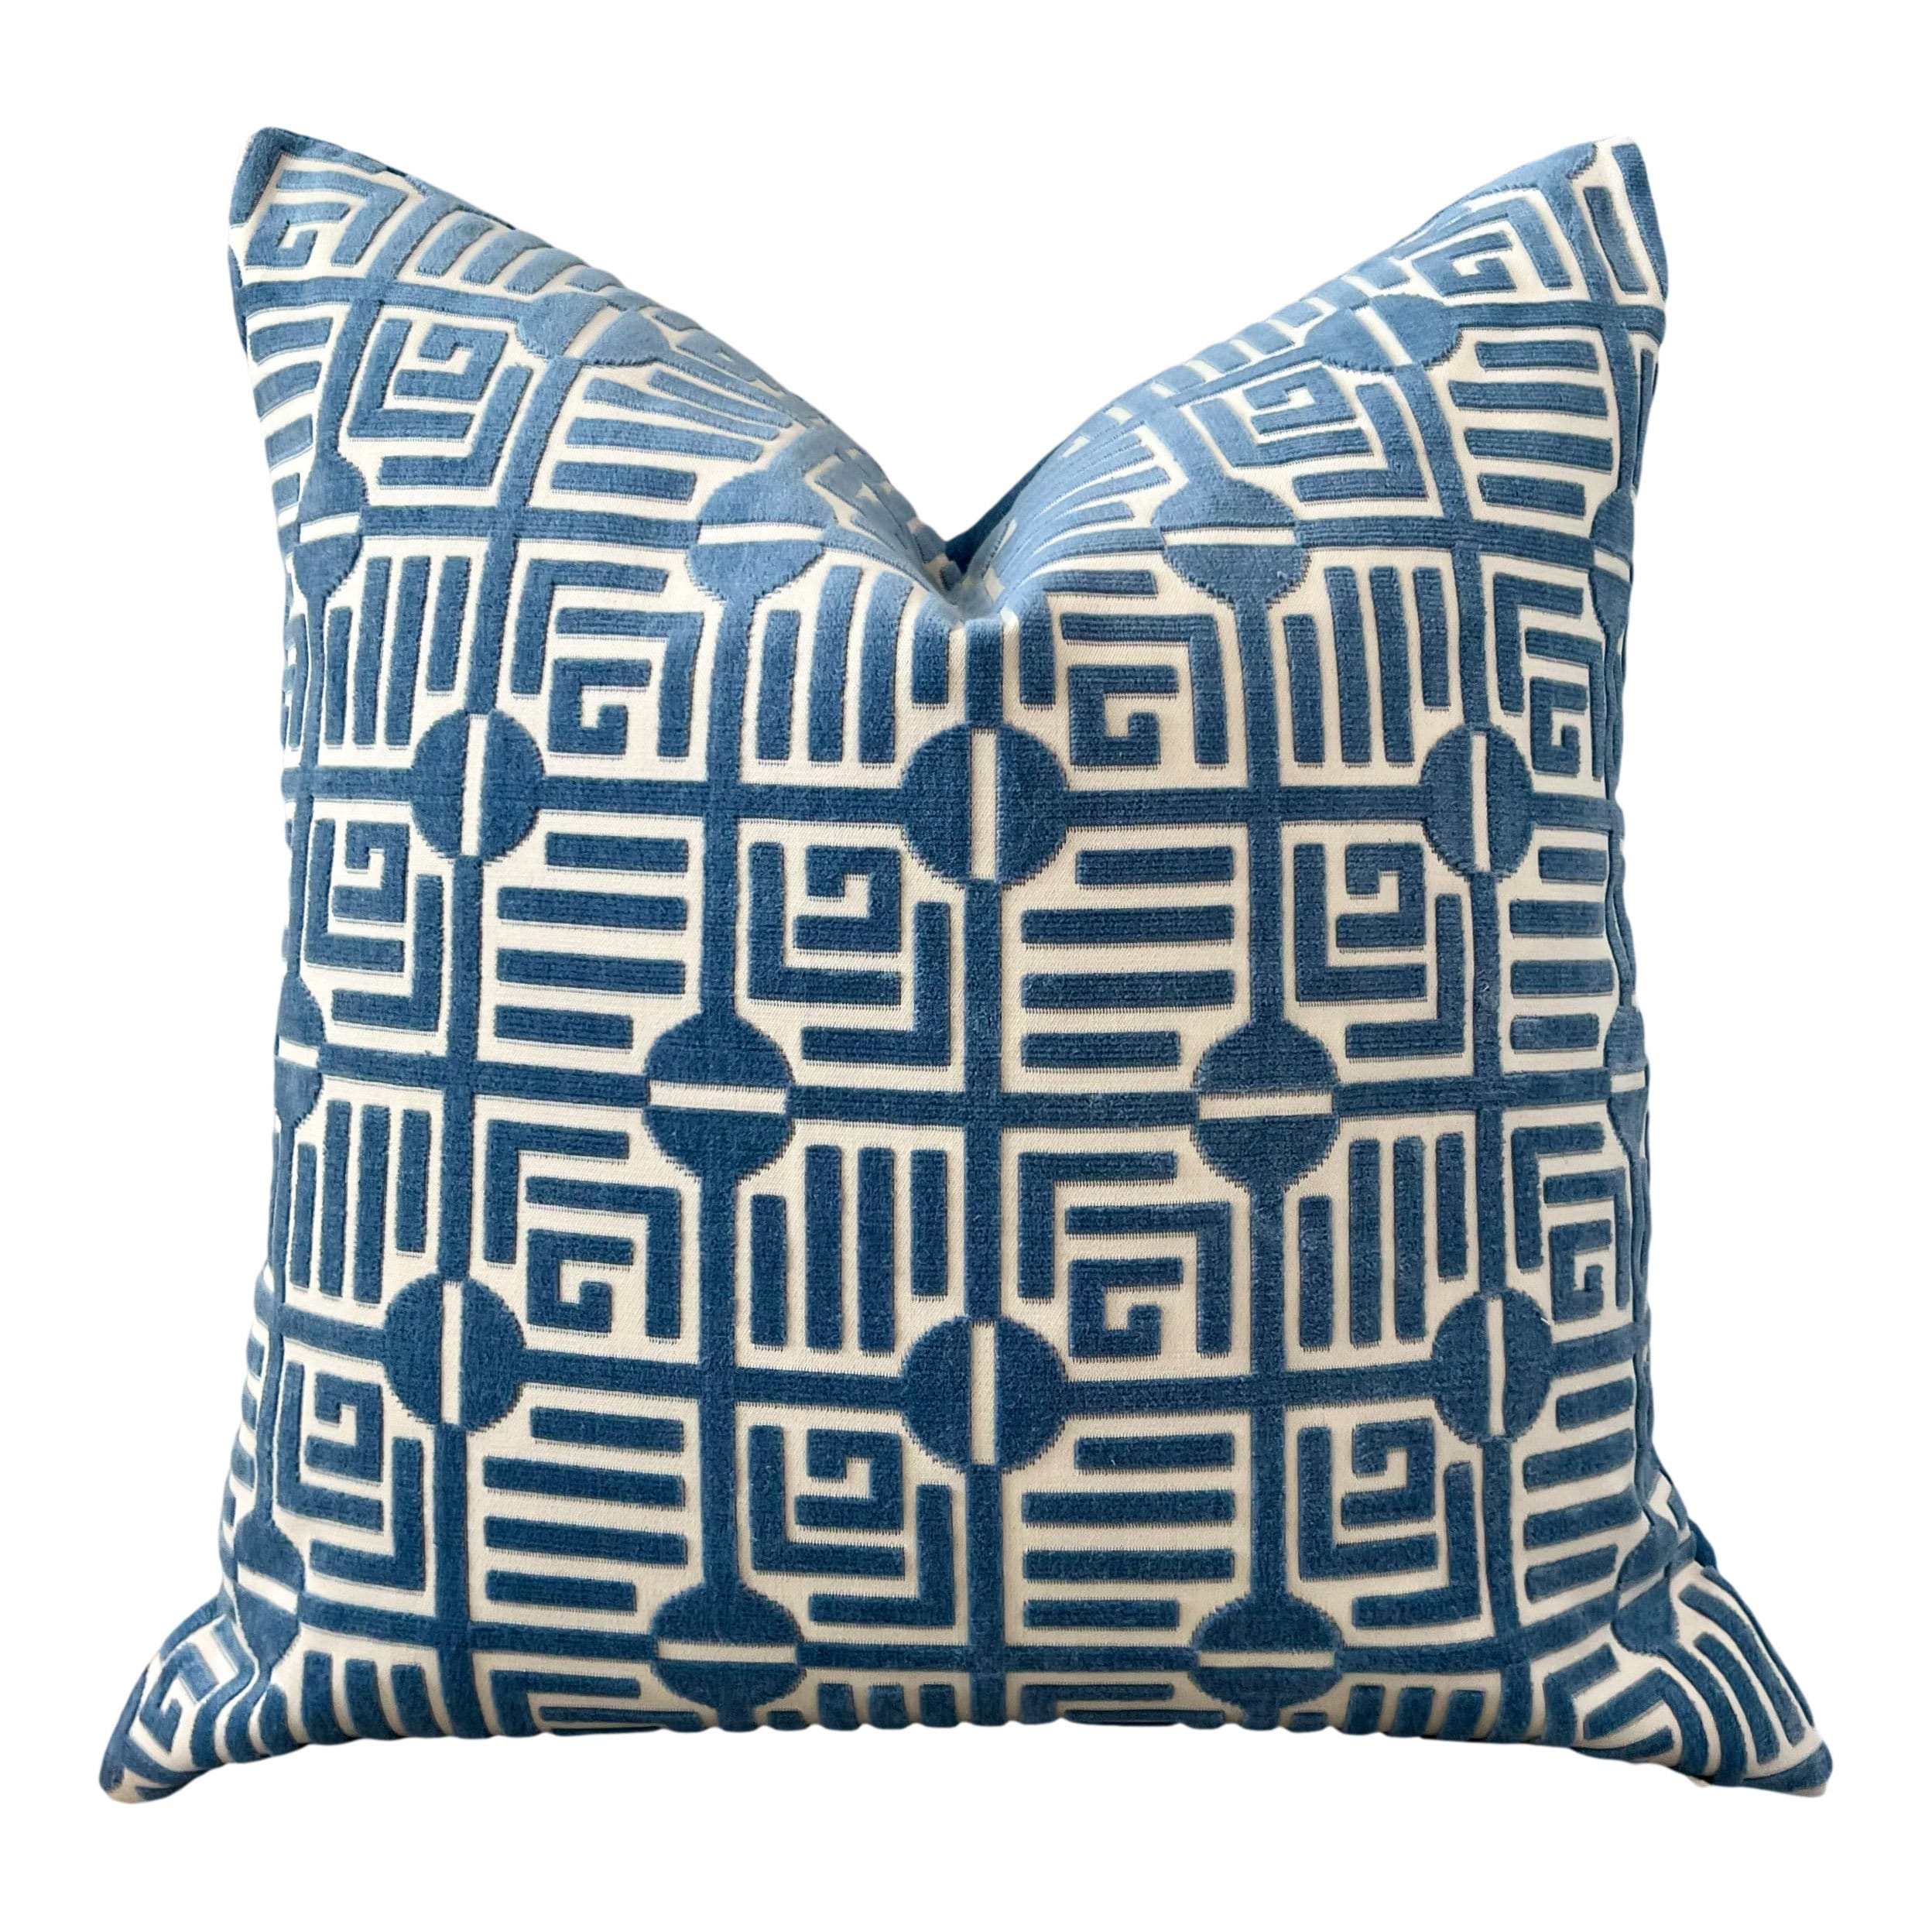 Thibaut Labyrinth Velvet Pillow in Blue. High End Pillows, Designer Raised Velvet Pillows, Geometric Velvet Pillows in Light Blue, Euro Sham